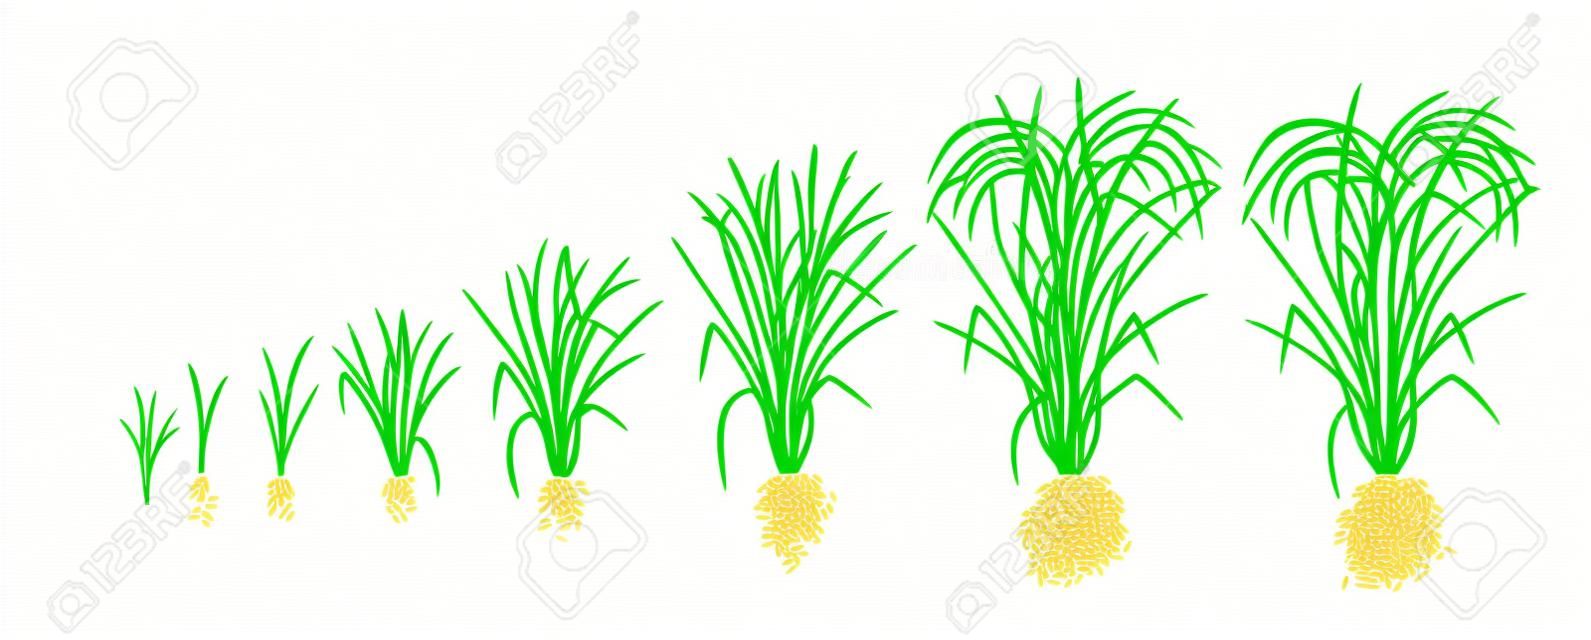 Etapy wzrostu rośliny ryżu. Fazy wzrostu ryżu. Ilustracja wektorowa. Oryza sativa. Okres dojrzewania. Cykl życia. Używaj nawozów. Na białym tle. Jest to towar rolny z trzecią co do wielkości produkcją na świecie.